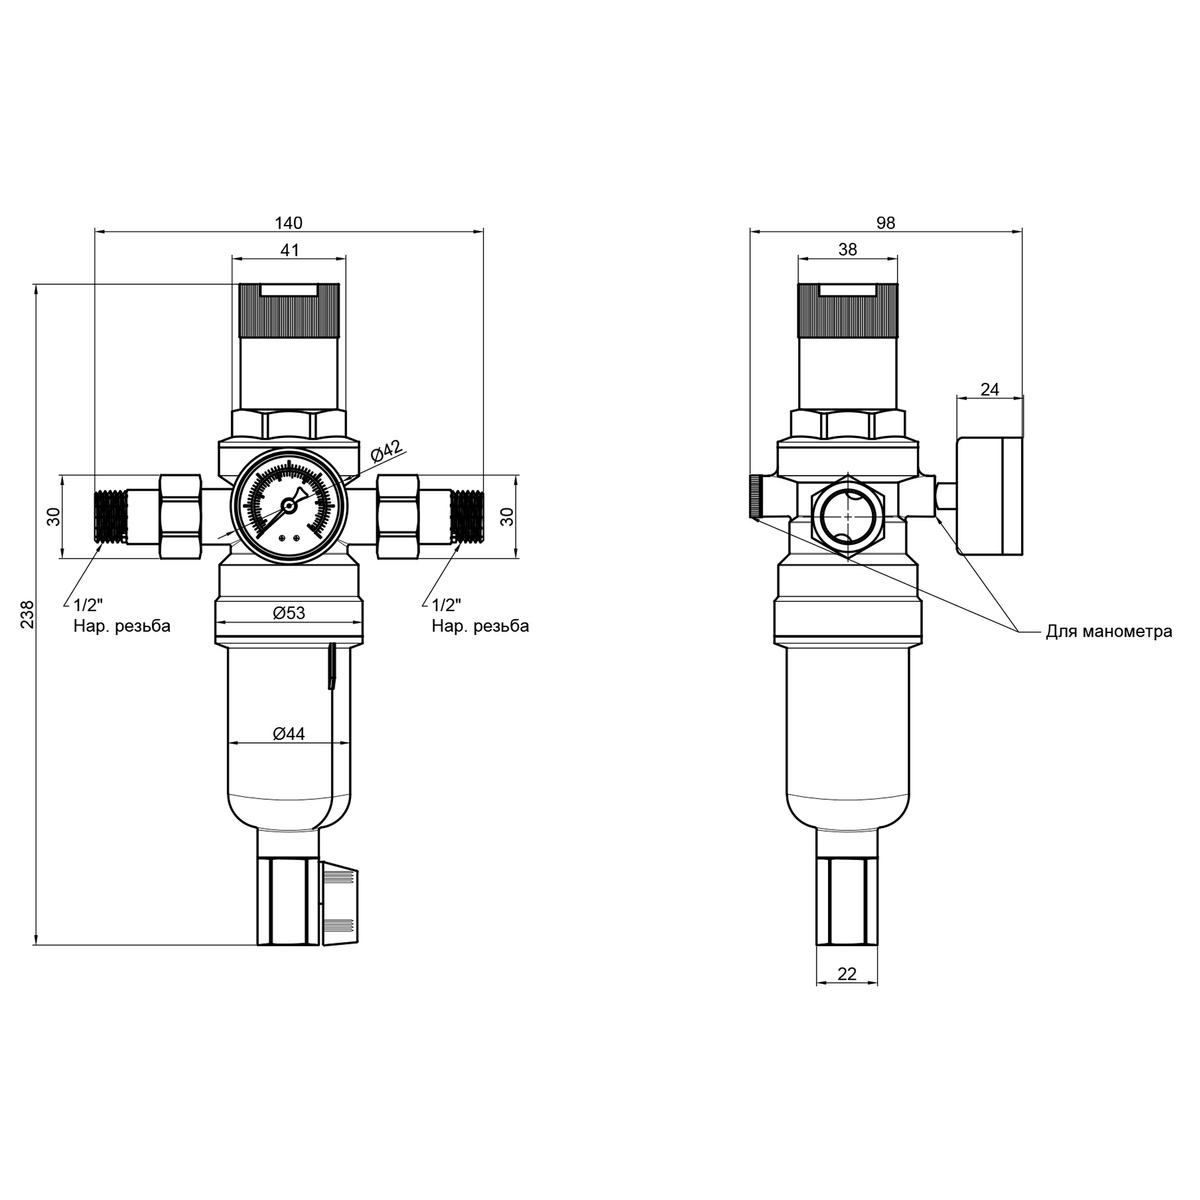 Фильтр самопромывной SANDI FORTE для горячей воды 1/2" 100 мкм с манометром и редуктором SF128W15H